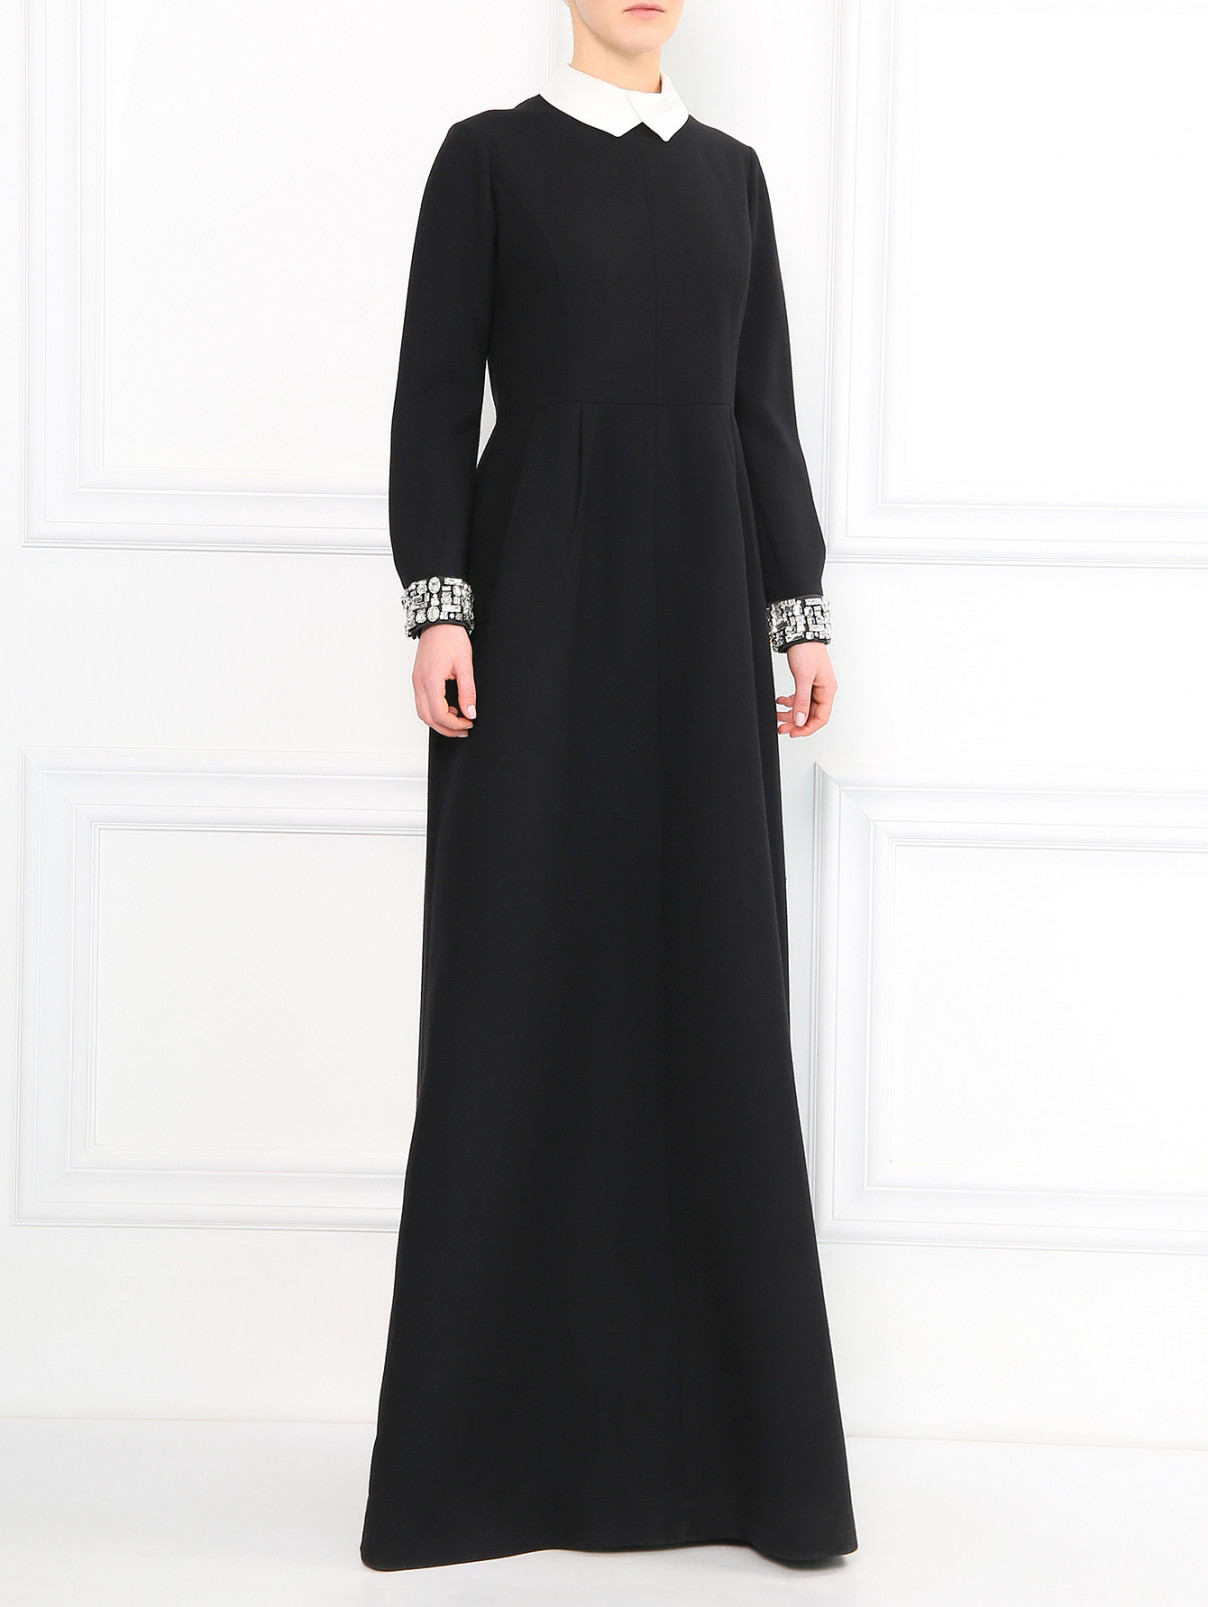 Платье-макси со съемным воротником и кристаллами Dice Kayek  –  Модель Общий вид  – Цвет:  Черный